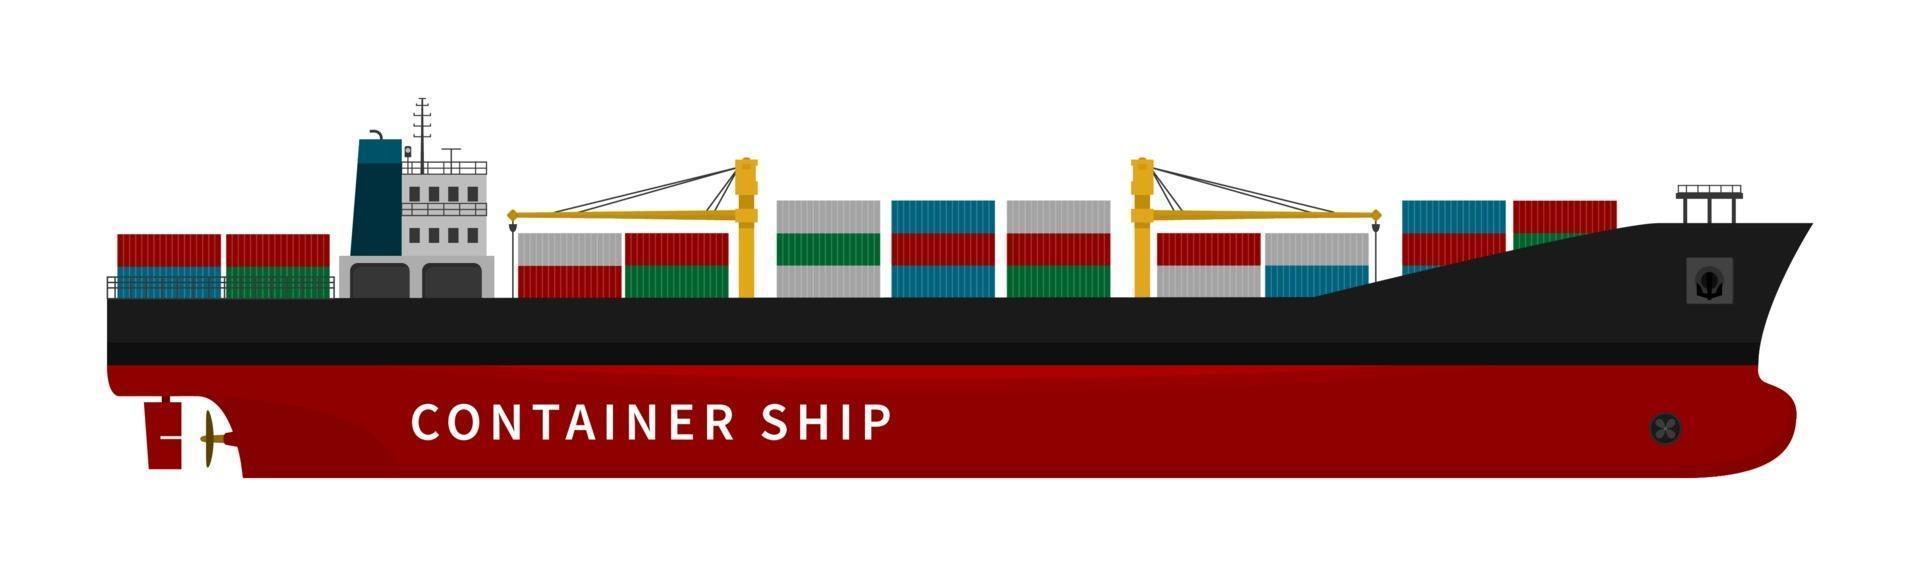 rotes Containerfrachtschiff auf weißem Hintergrund vektor